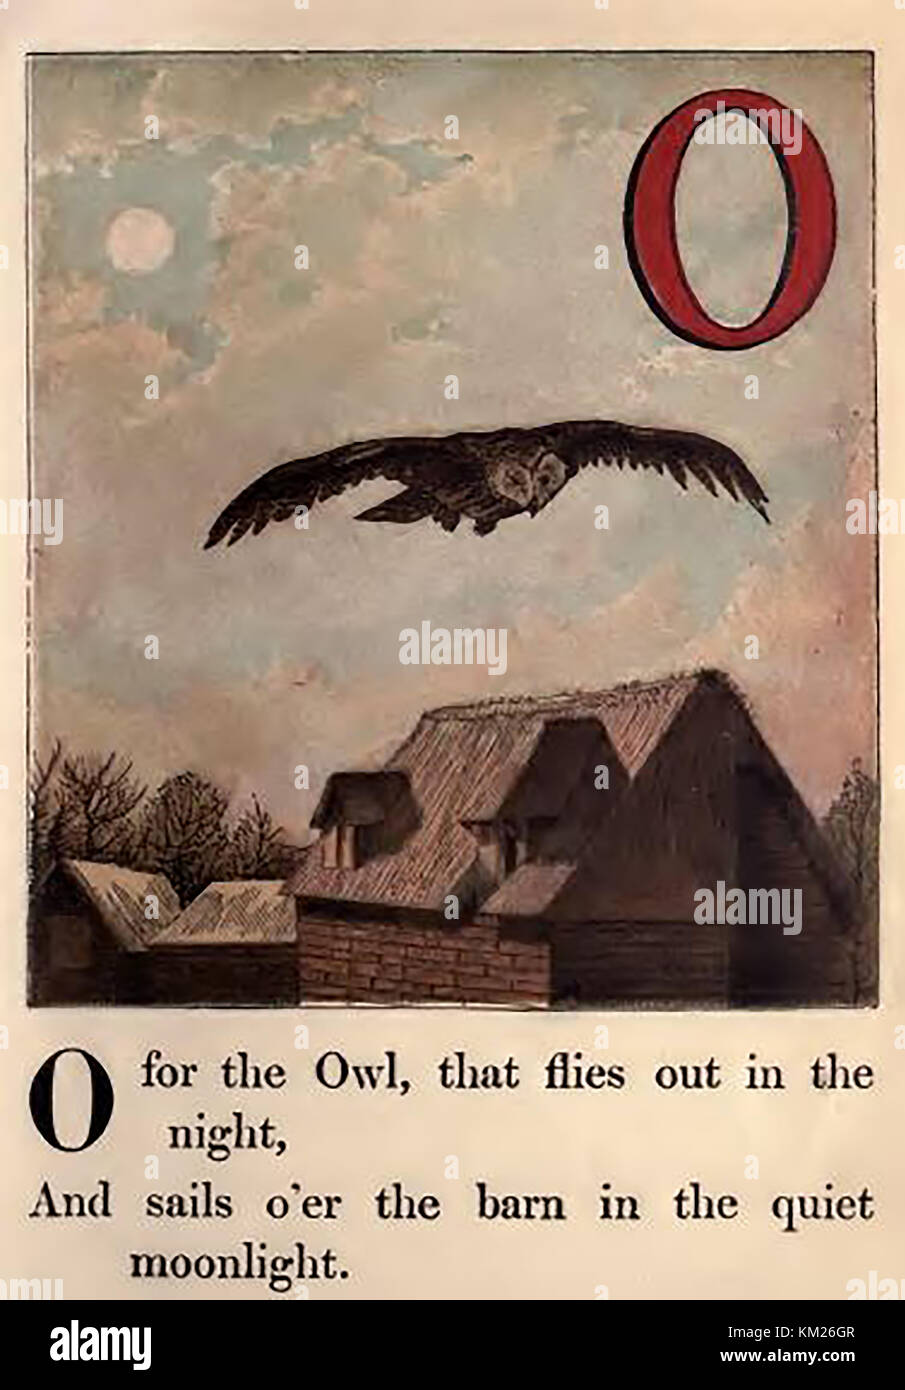 Une couleur historique Victorian children's ABC book illustration - O pour Owl voler au-dessus de la grange à la ferme Banque D'Images